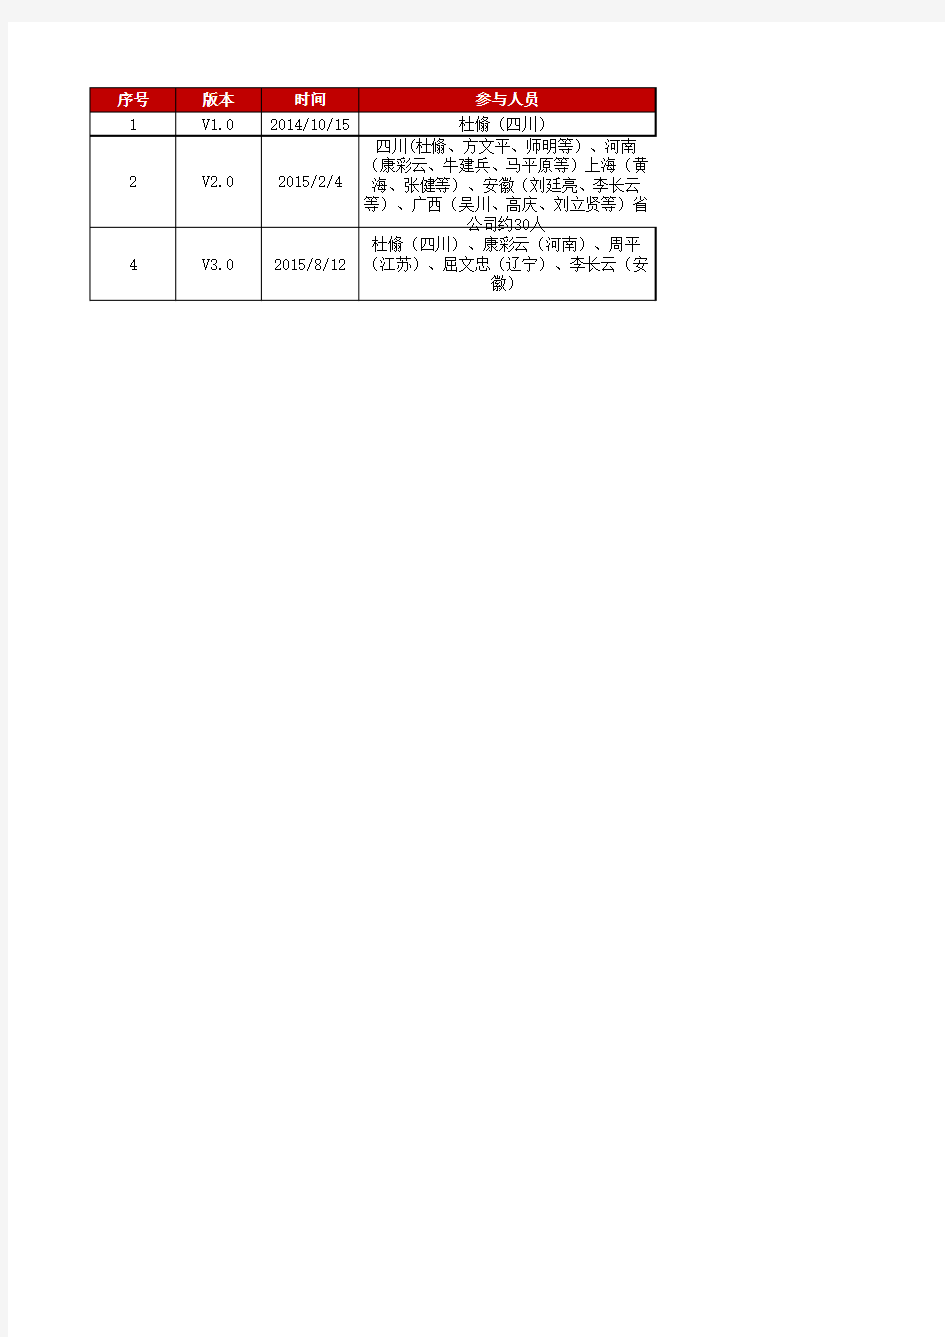 中国移动动环L2-动环监控系统考纲